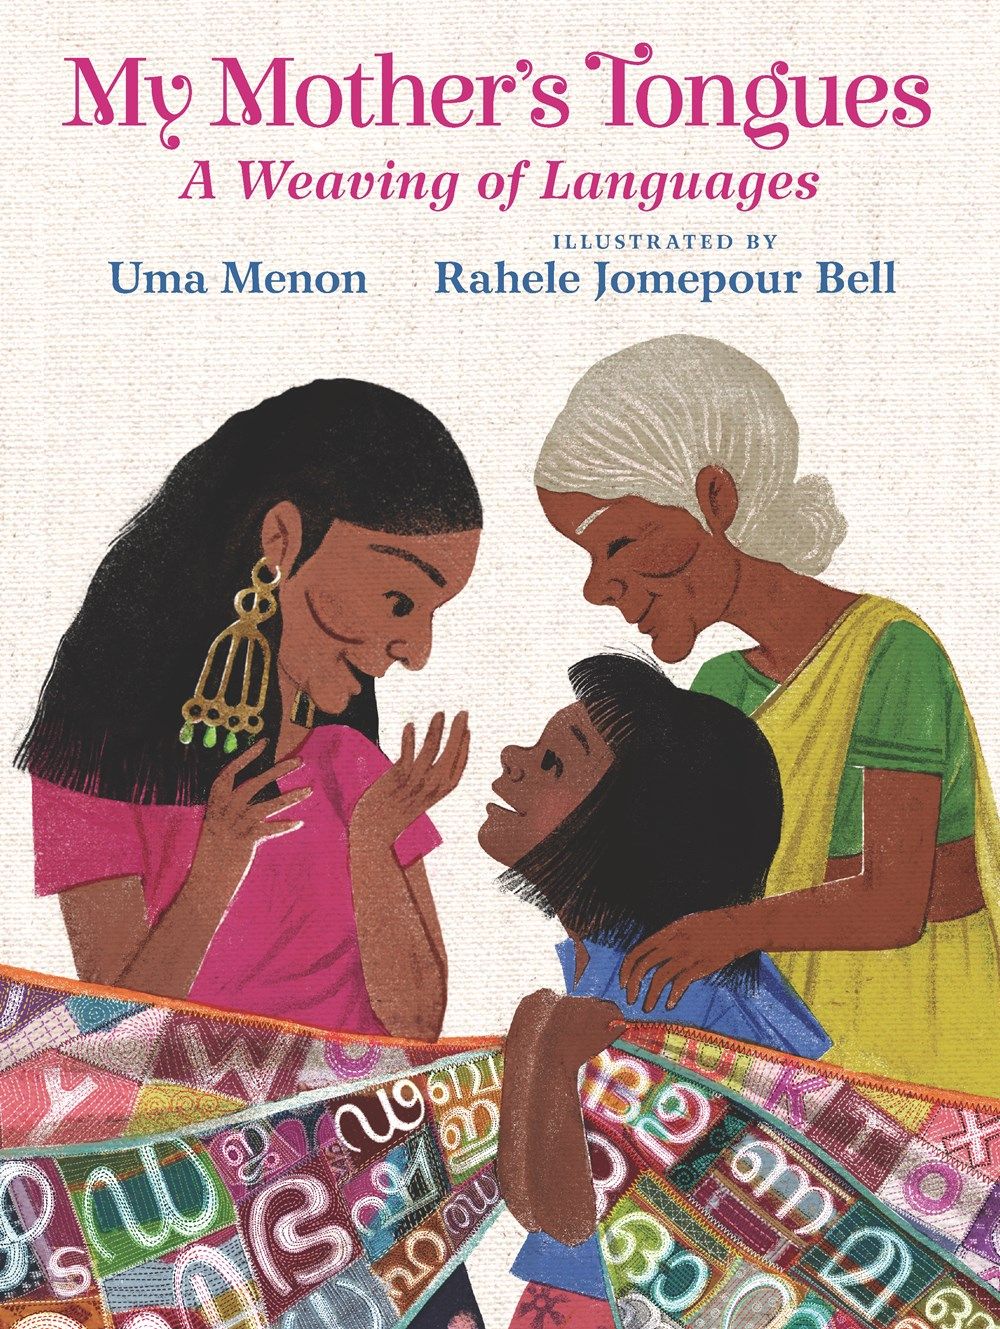 Couverture de Les langues de ma mère : Un tissage de langues d'Uma Menon, illustré par Rahele Jomepour Bell